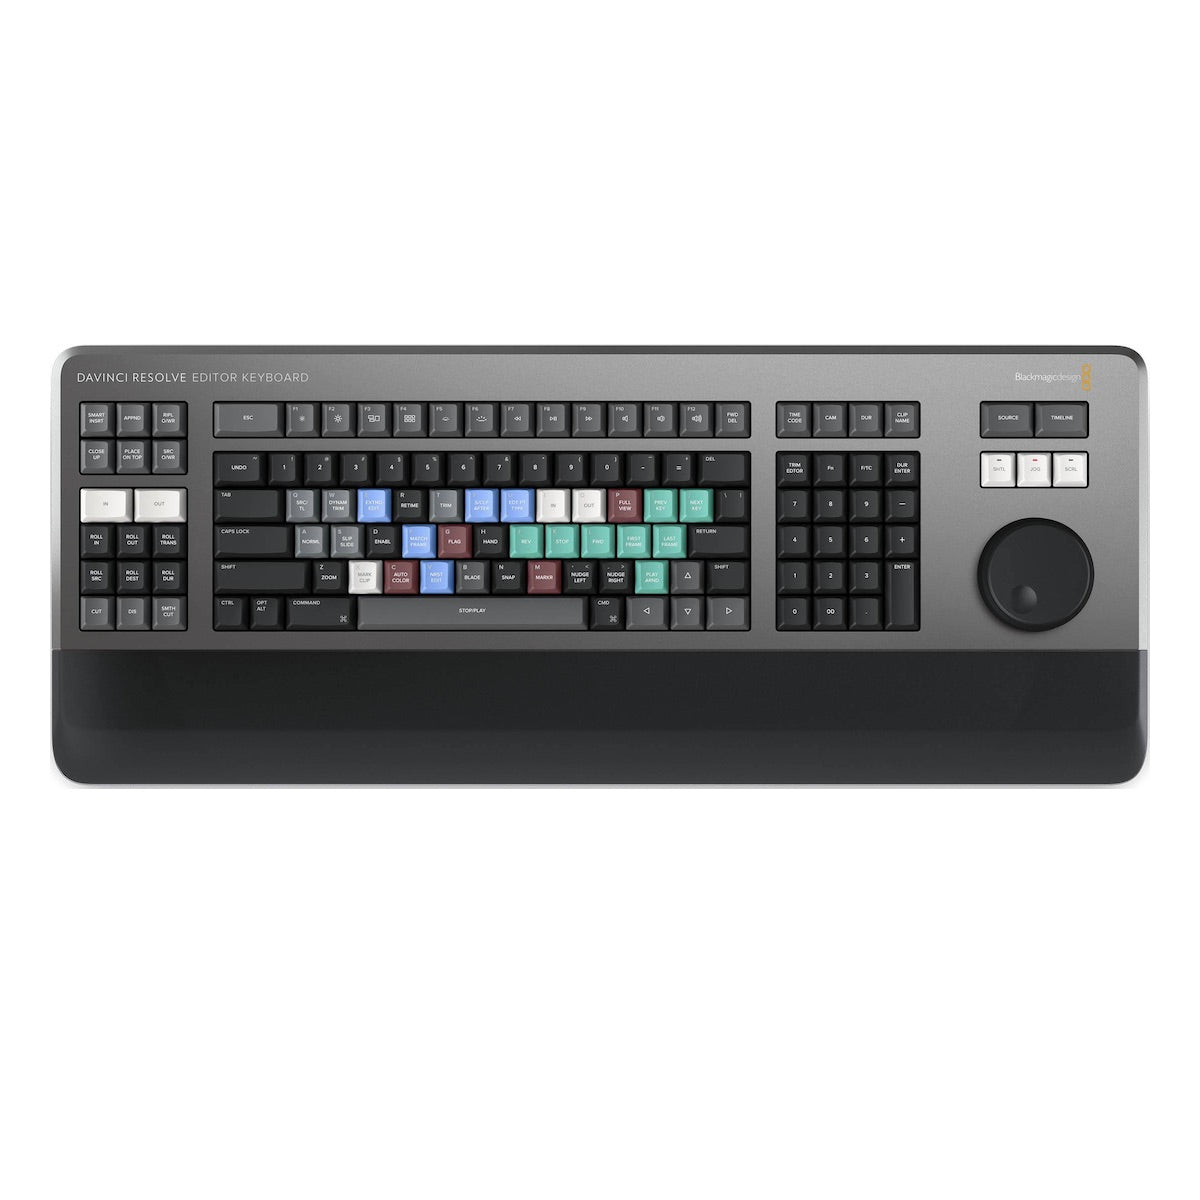 Blackmagic DaVinci Resolve Editor Keyboard, top